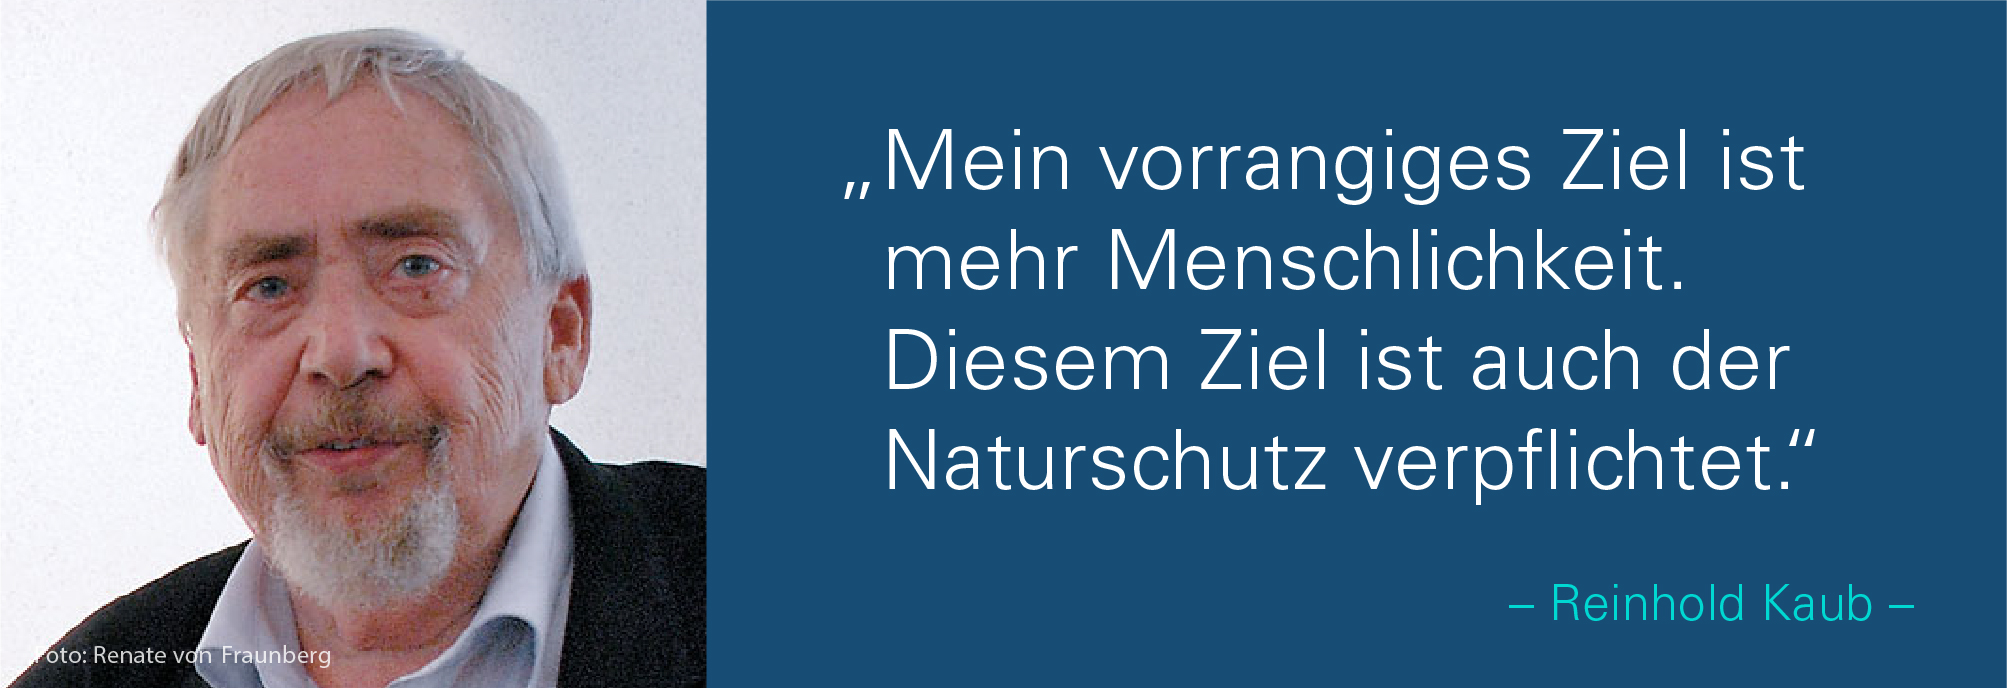 Portraitbild von Reinhold Kaub mit seinem Zitat: Mein vorrangiges Ziel ist mehr Menschlichkeit. Diesem Ziel ist auch der Naturschutz verpflichtet.